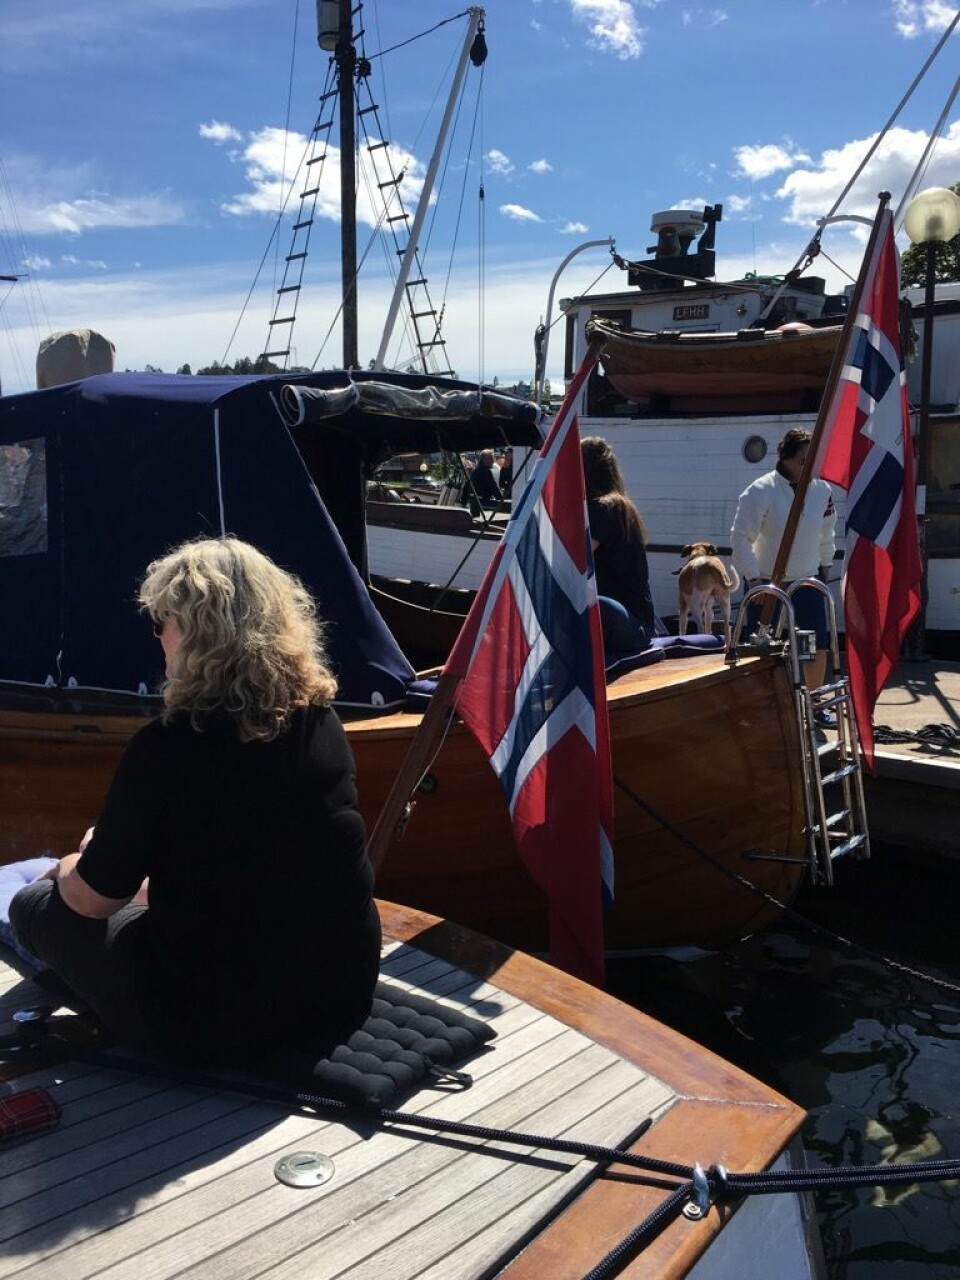 TETT I TETT: 90 flotte trebåter ligger til kai i Sætre i disse dagene. Foto: Sølvi Paulsen.